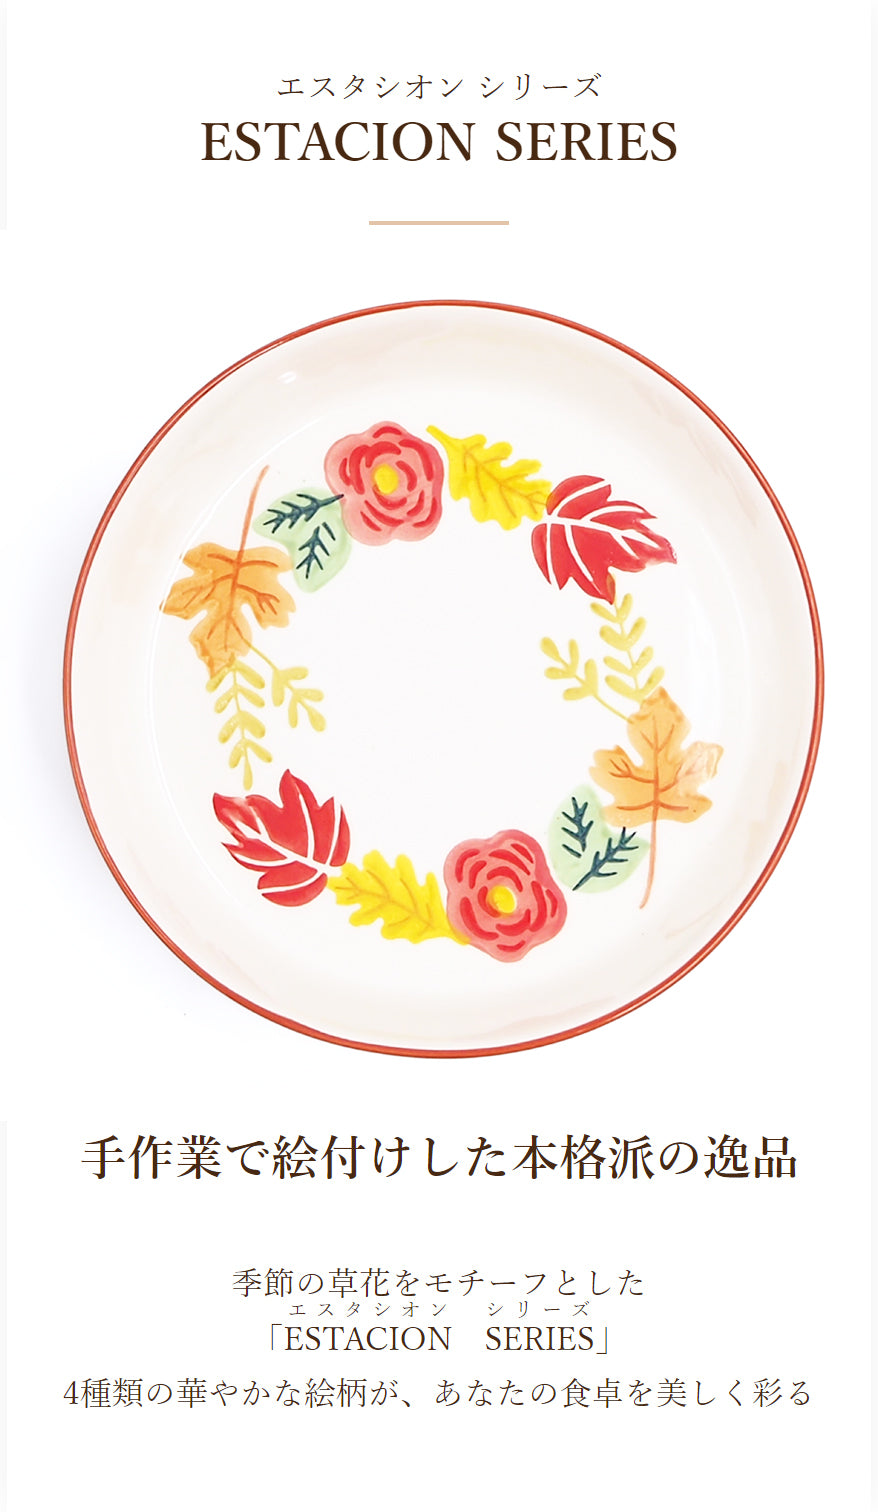 深皿 おしゃれなお皿 おしゃれな 食器 北欧食器 深皿 北欧 おしゃれな赤い花柄の深皿 エスタシオン